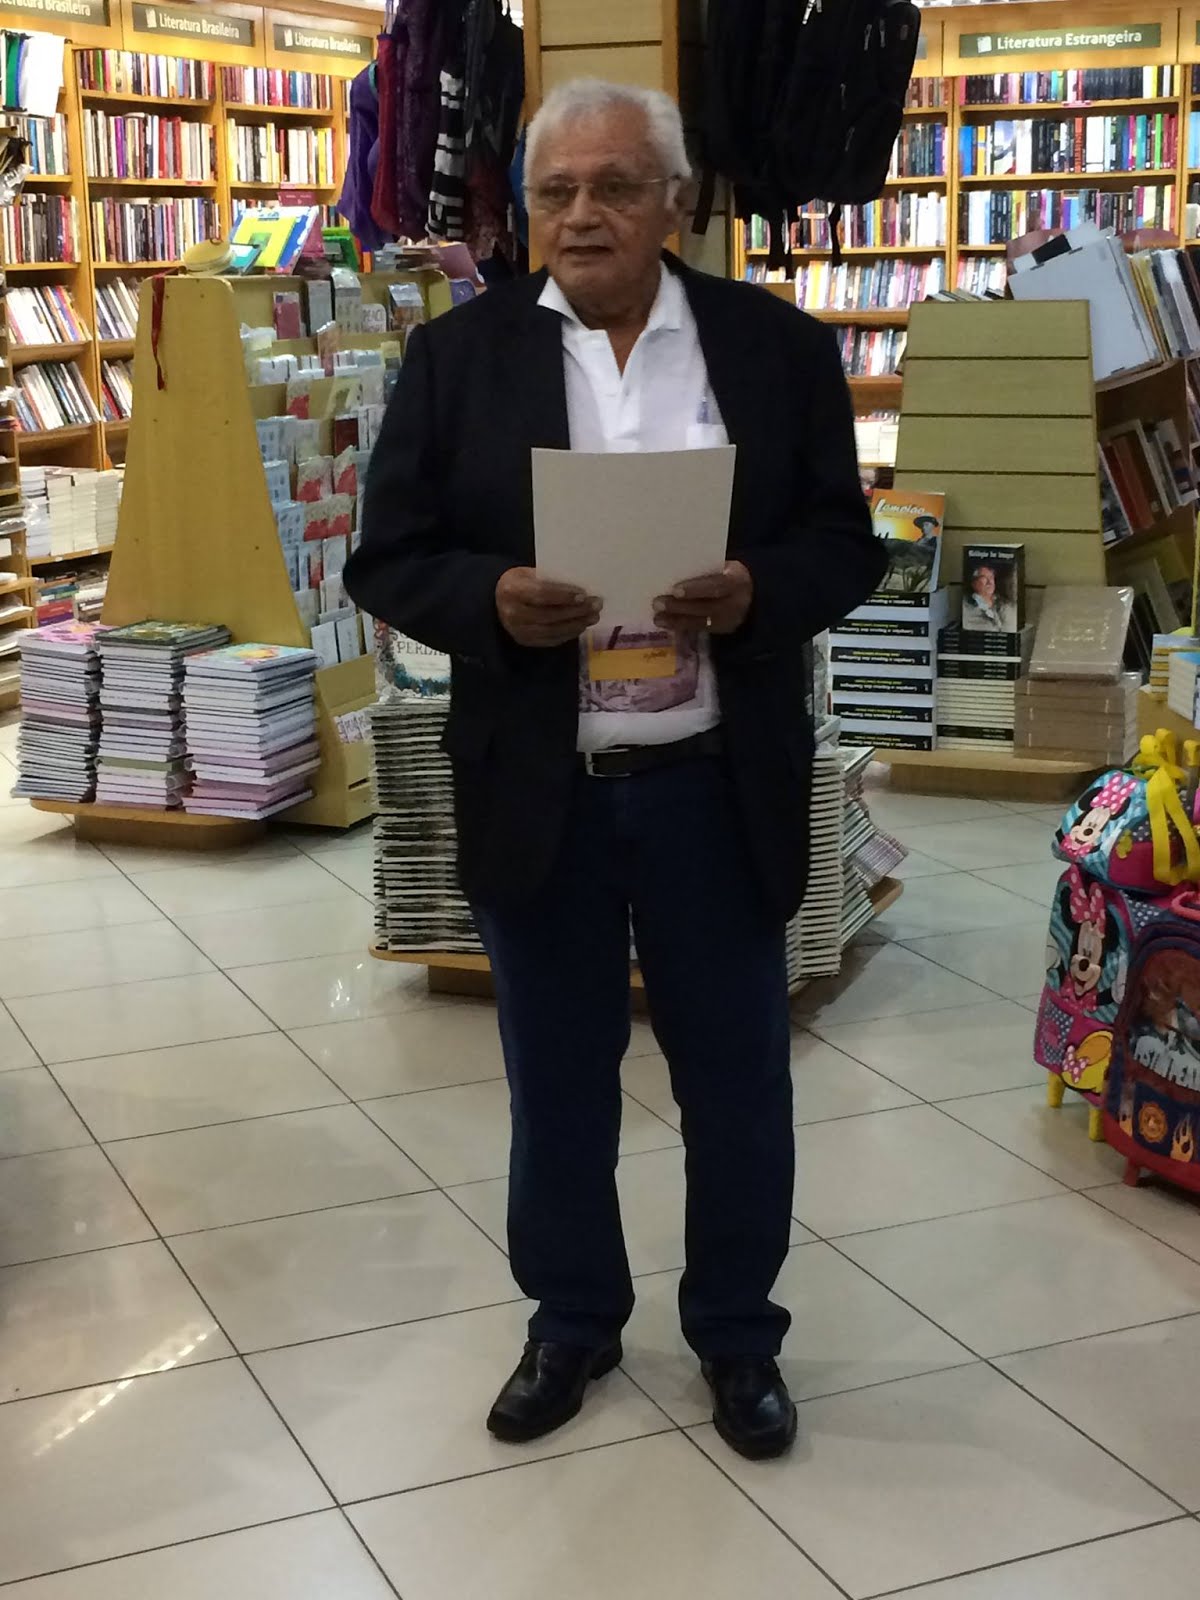 Livro "Joaquim Bento o poeta" Autor Souza Lima.